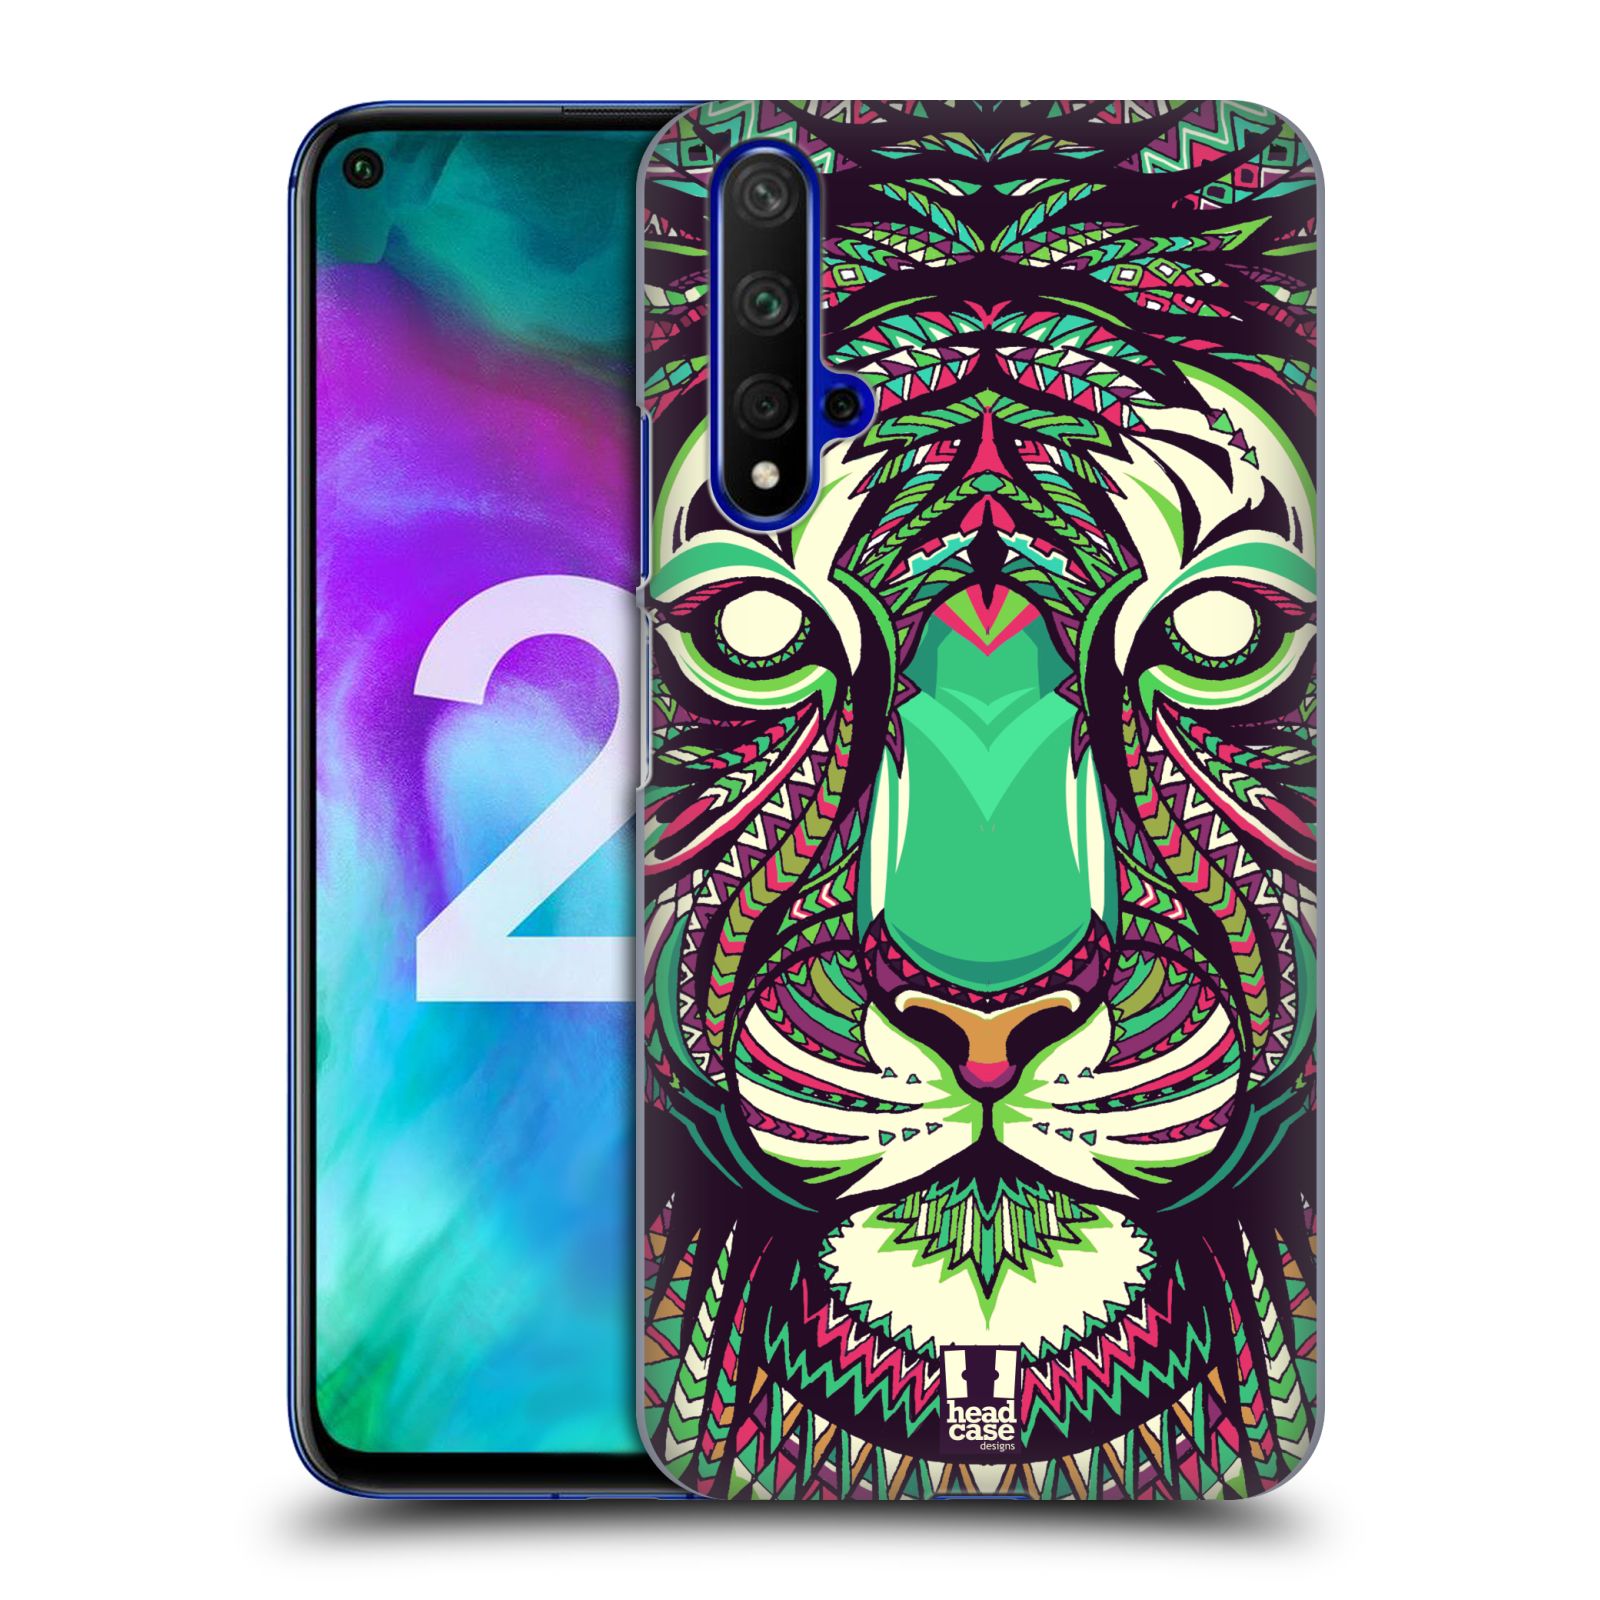 Pouzdro na mobil Honor 20 - HEAD CASE - vzor Aztécký motiv zvíře 2 tygr